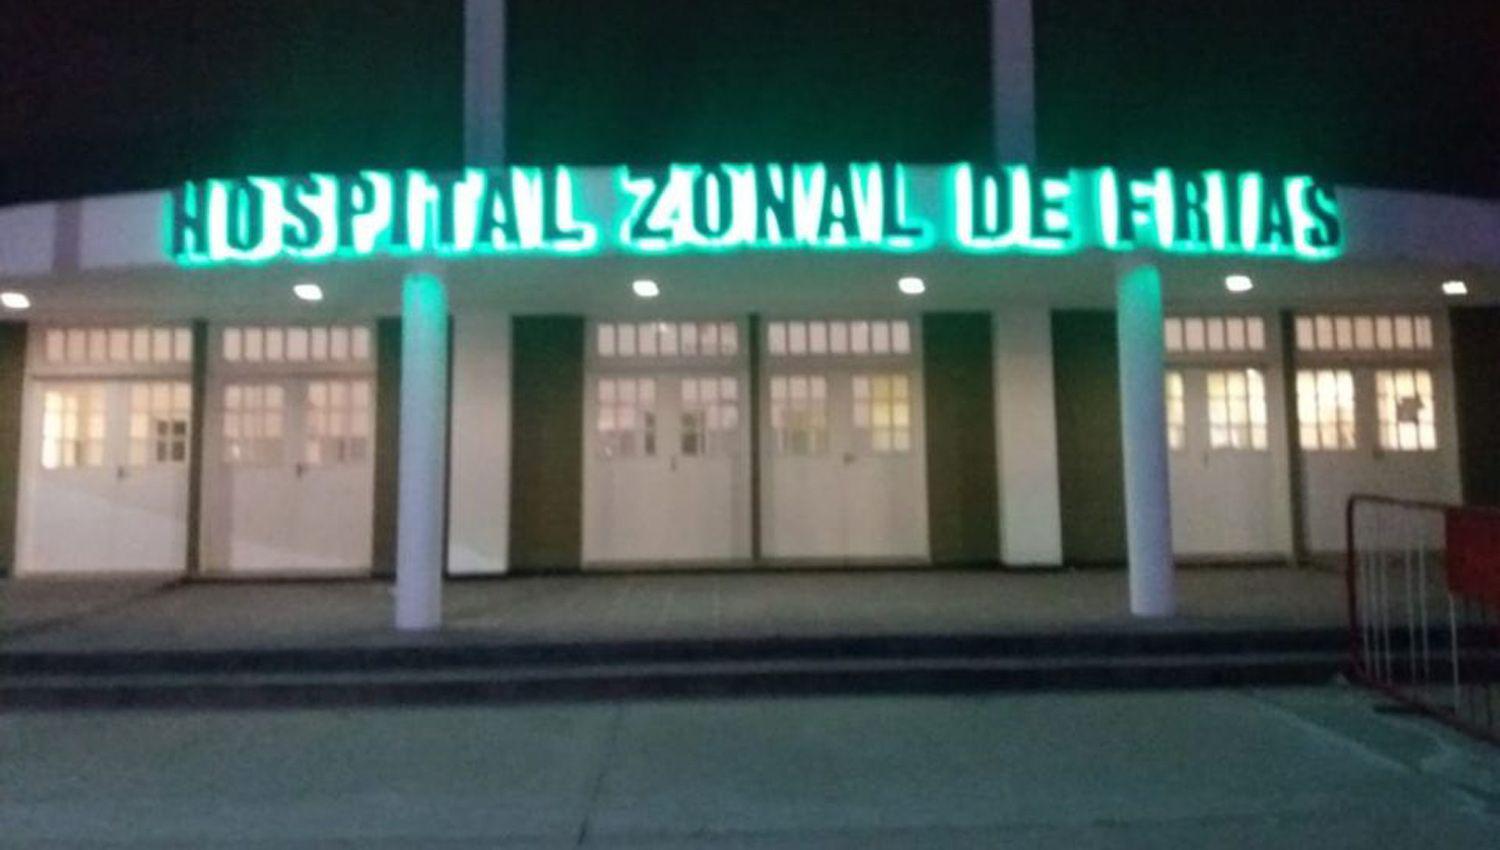 La persona acuchillada fue asistida en la sala de urgencias del Hospital Zonal de Frías